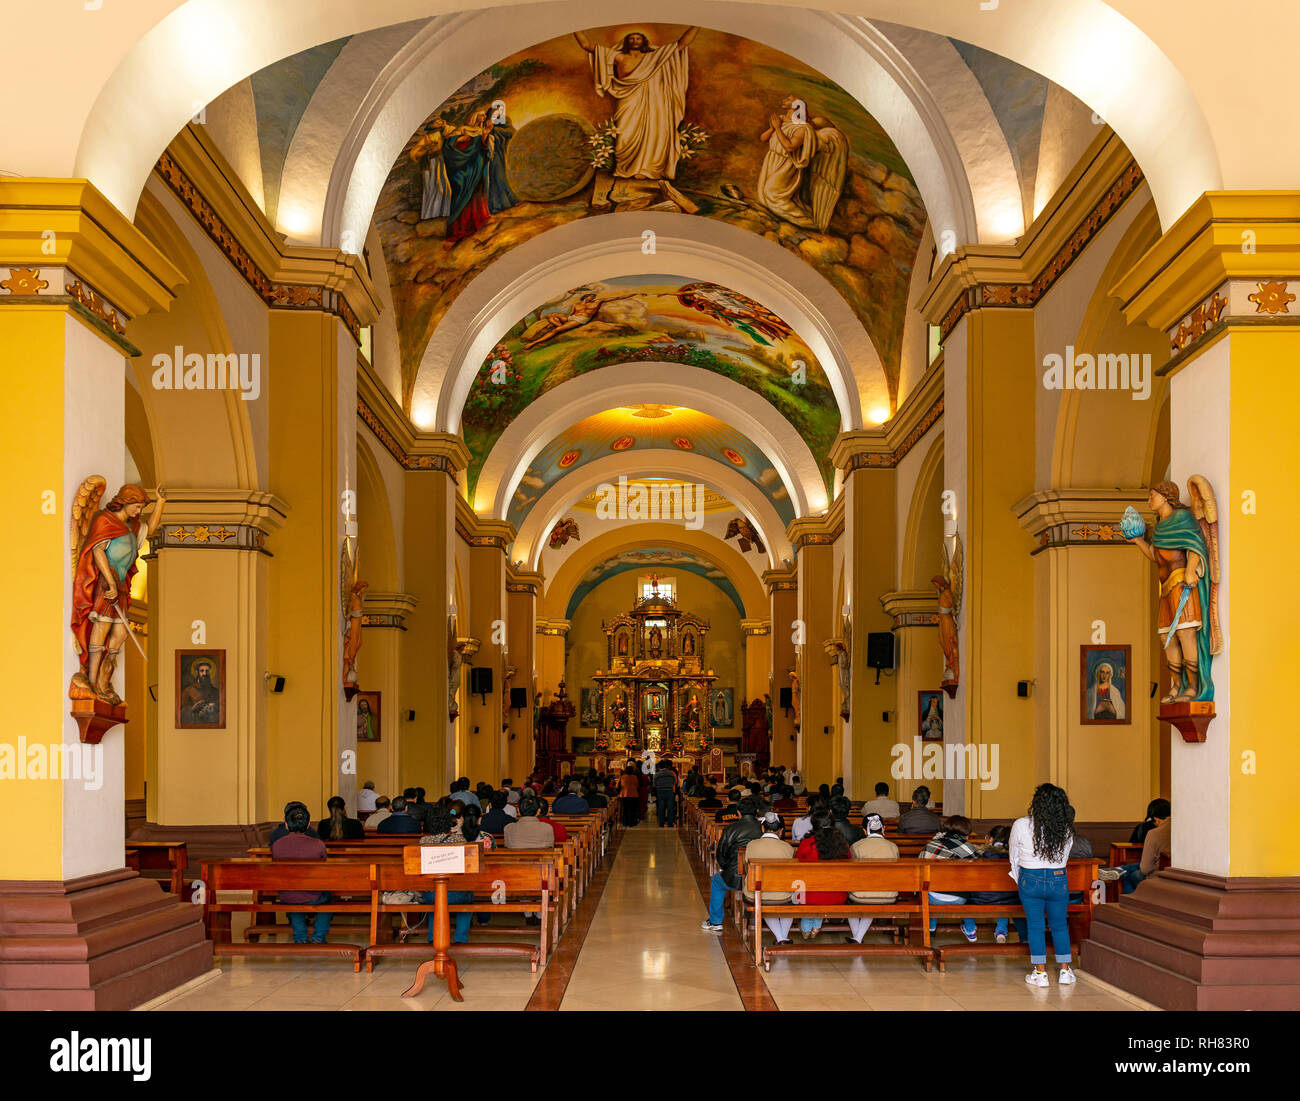 Menschen Masse innerhalb der barocken Dom Basilika St. Maria in Trujillo, Peru besuchen. Stockfoto